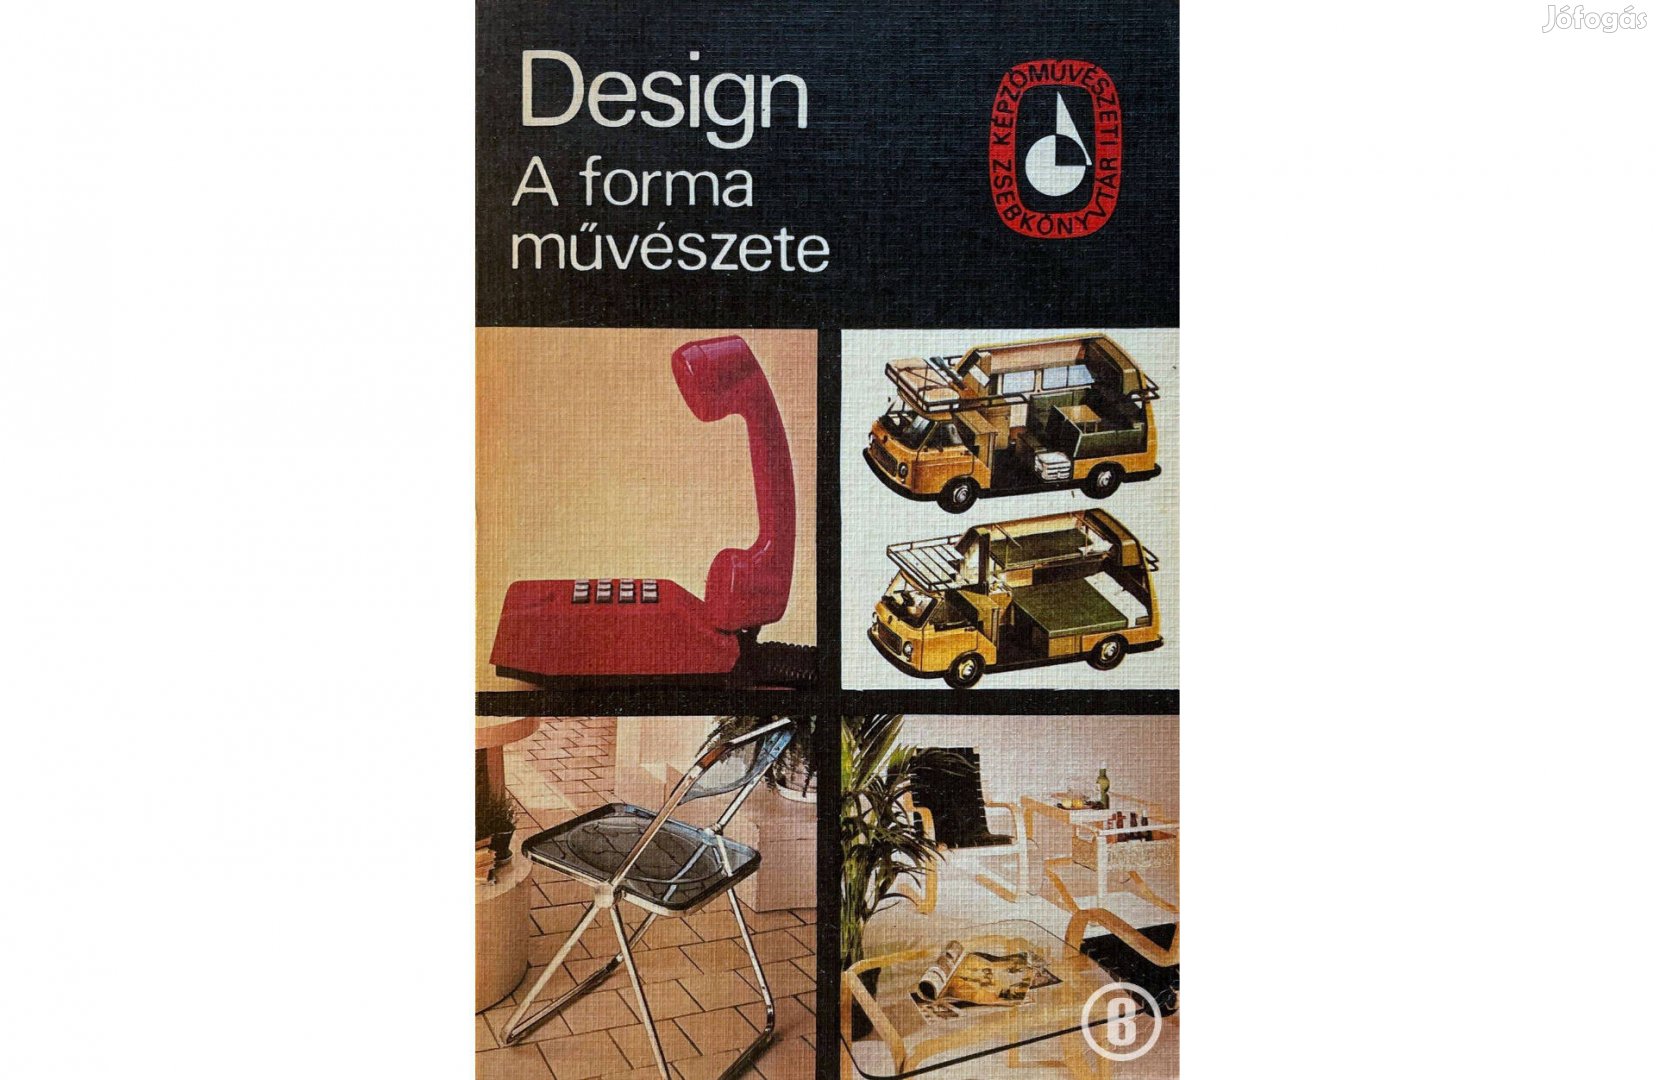 Design A forma művészete (szerk. Dvorszky Hedvig)